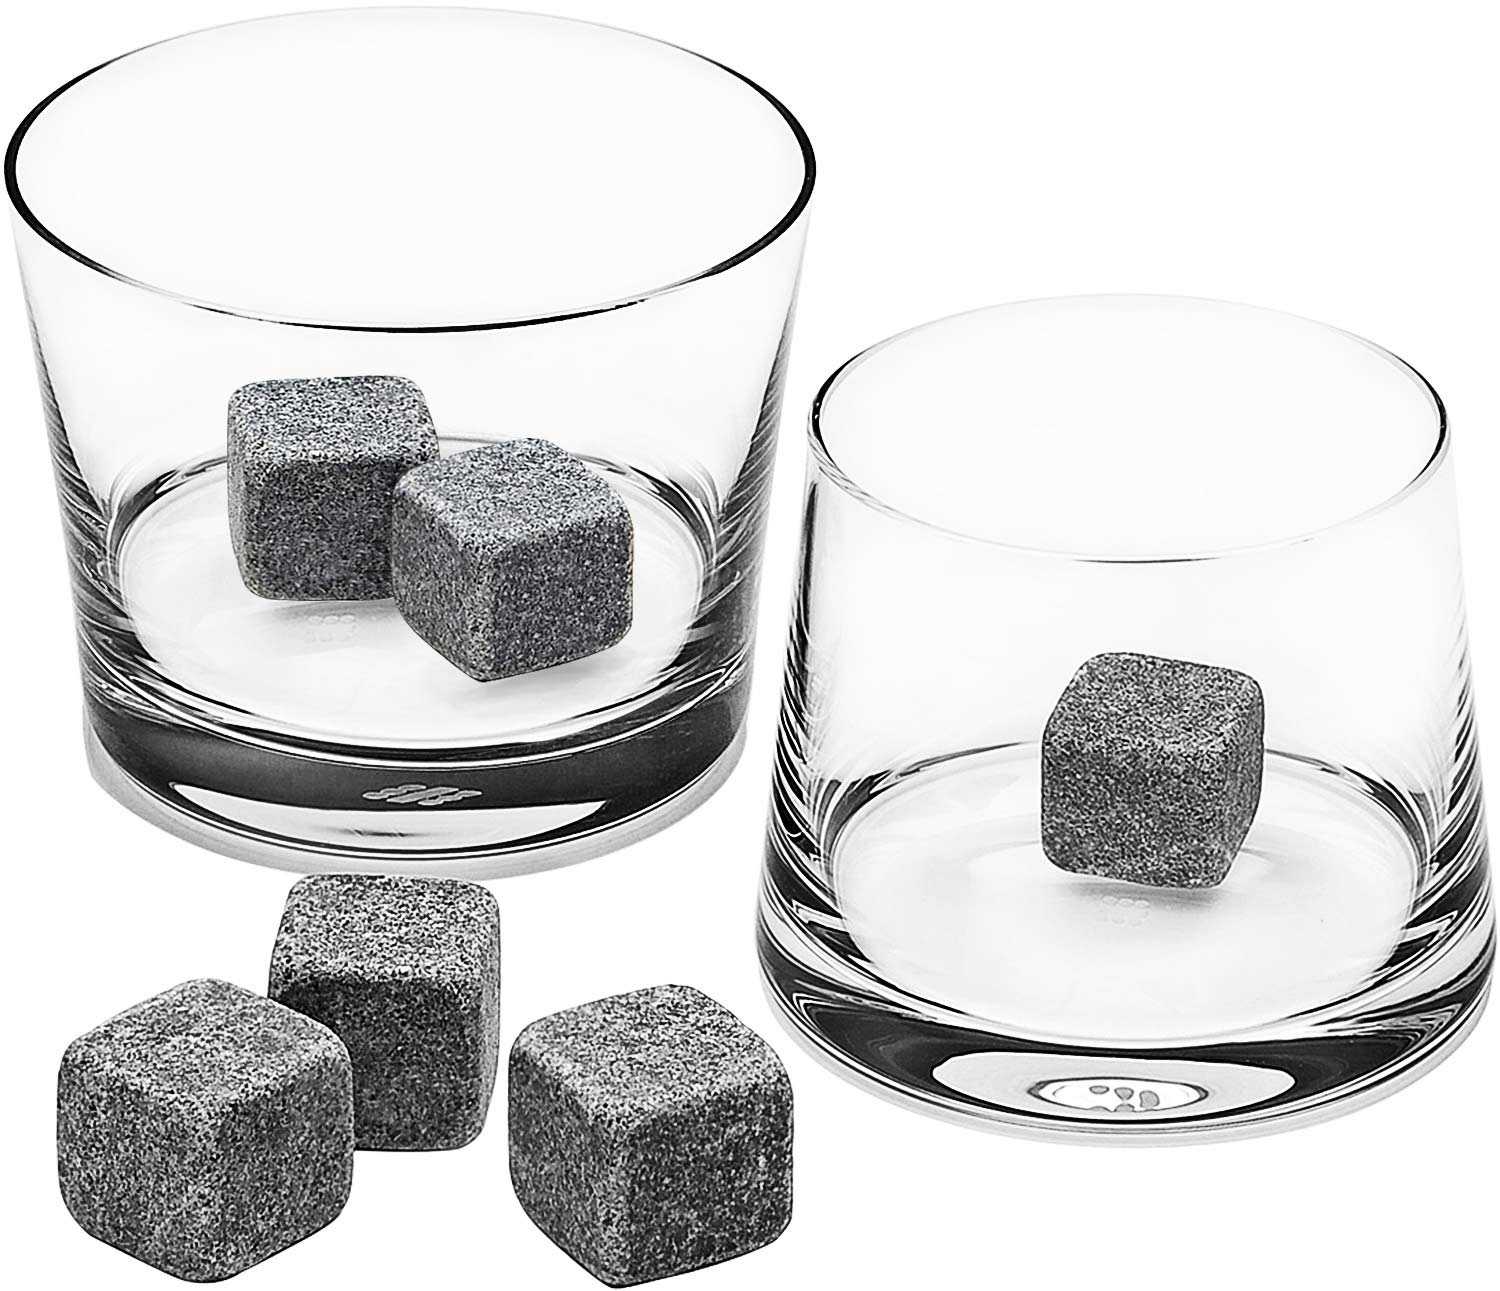 Камни для виски: что это и для чего нужны, отзывы людей о whiskey stones